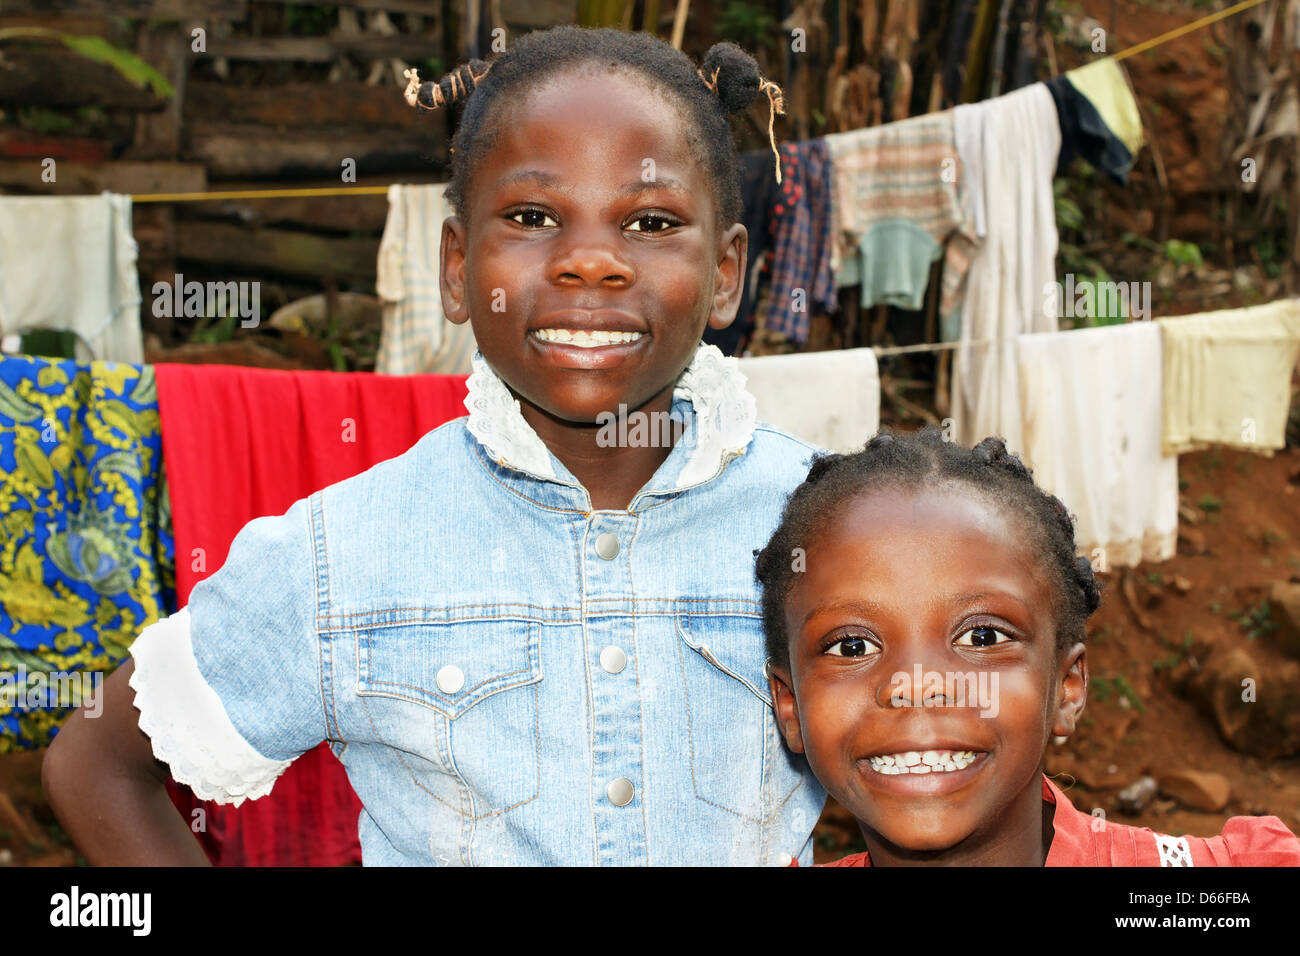 Zwei glückliche Afrikanische schwarze Mädchen, Schwestern, zu Hause mit  Wäscheleine hinter ihnen Stockfotografie - Alamy